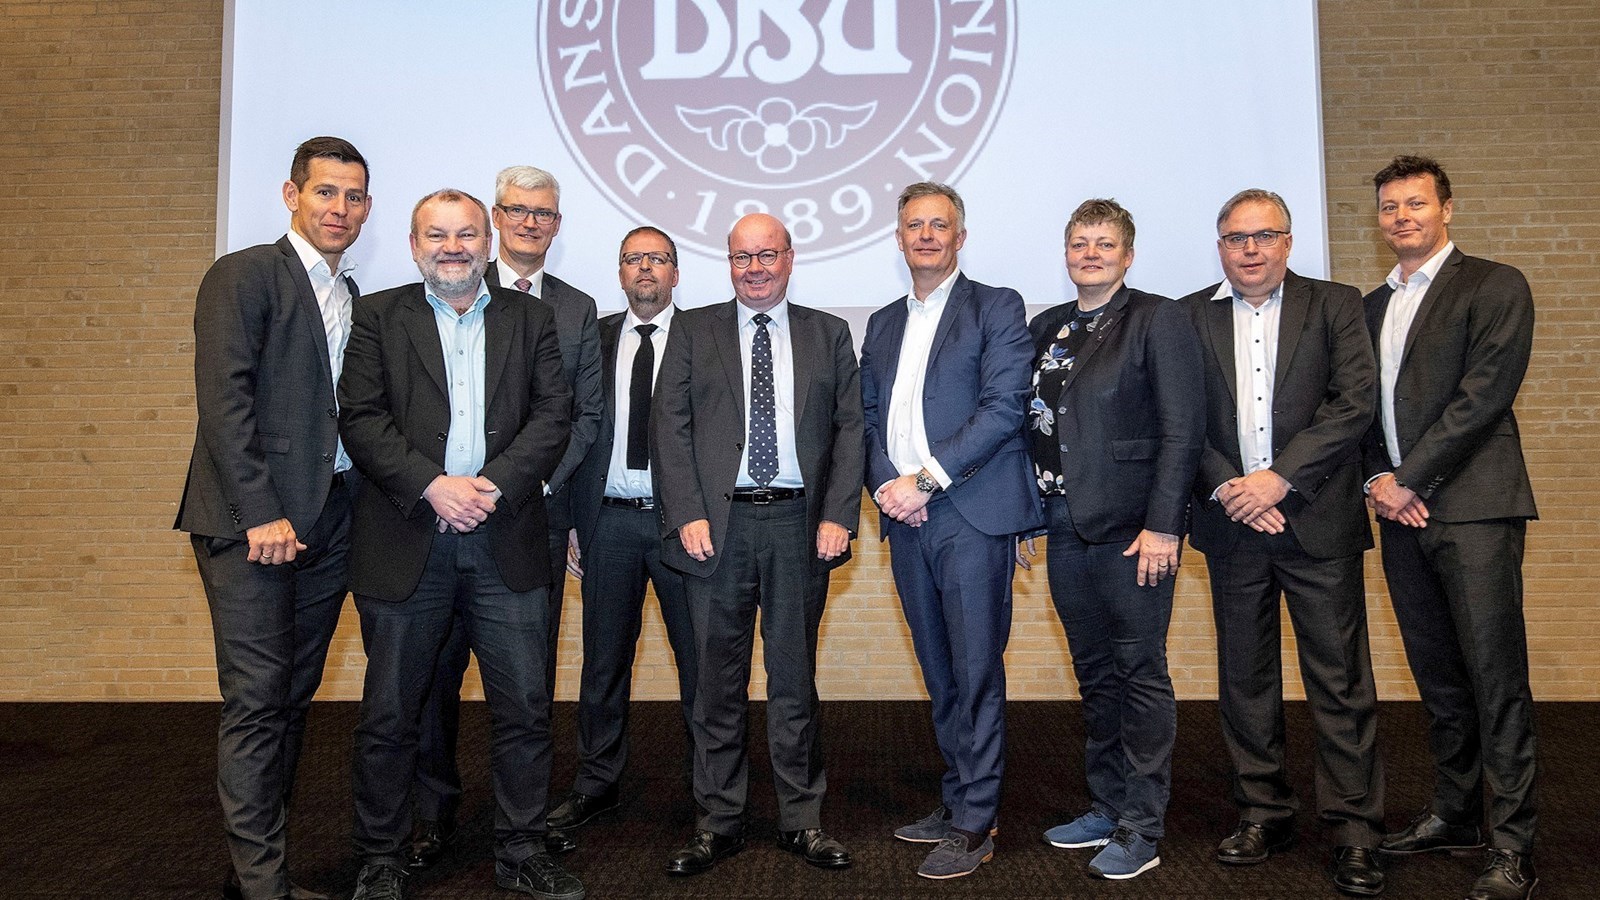 DBU-formand: Det går godt i dansk fodbold